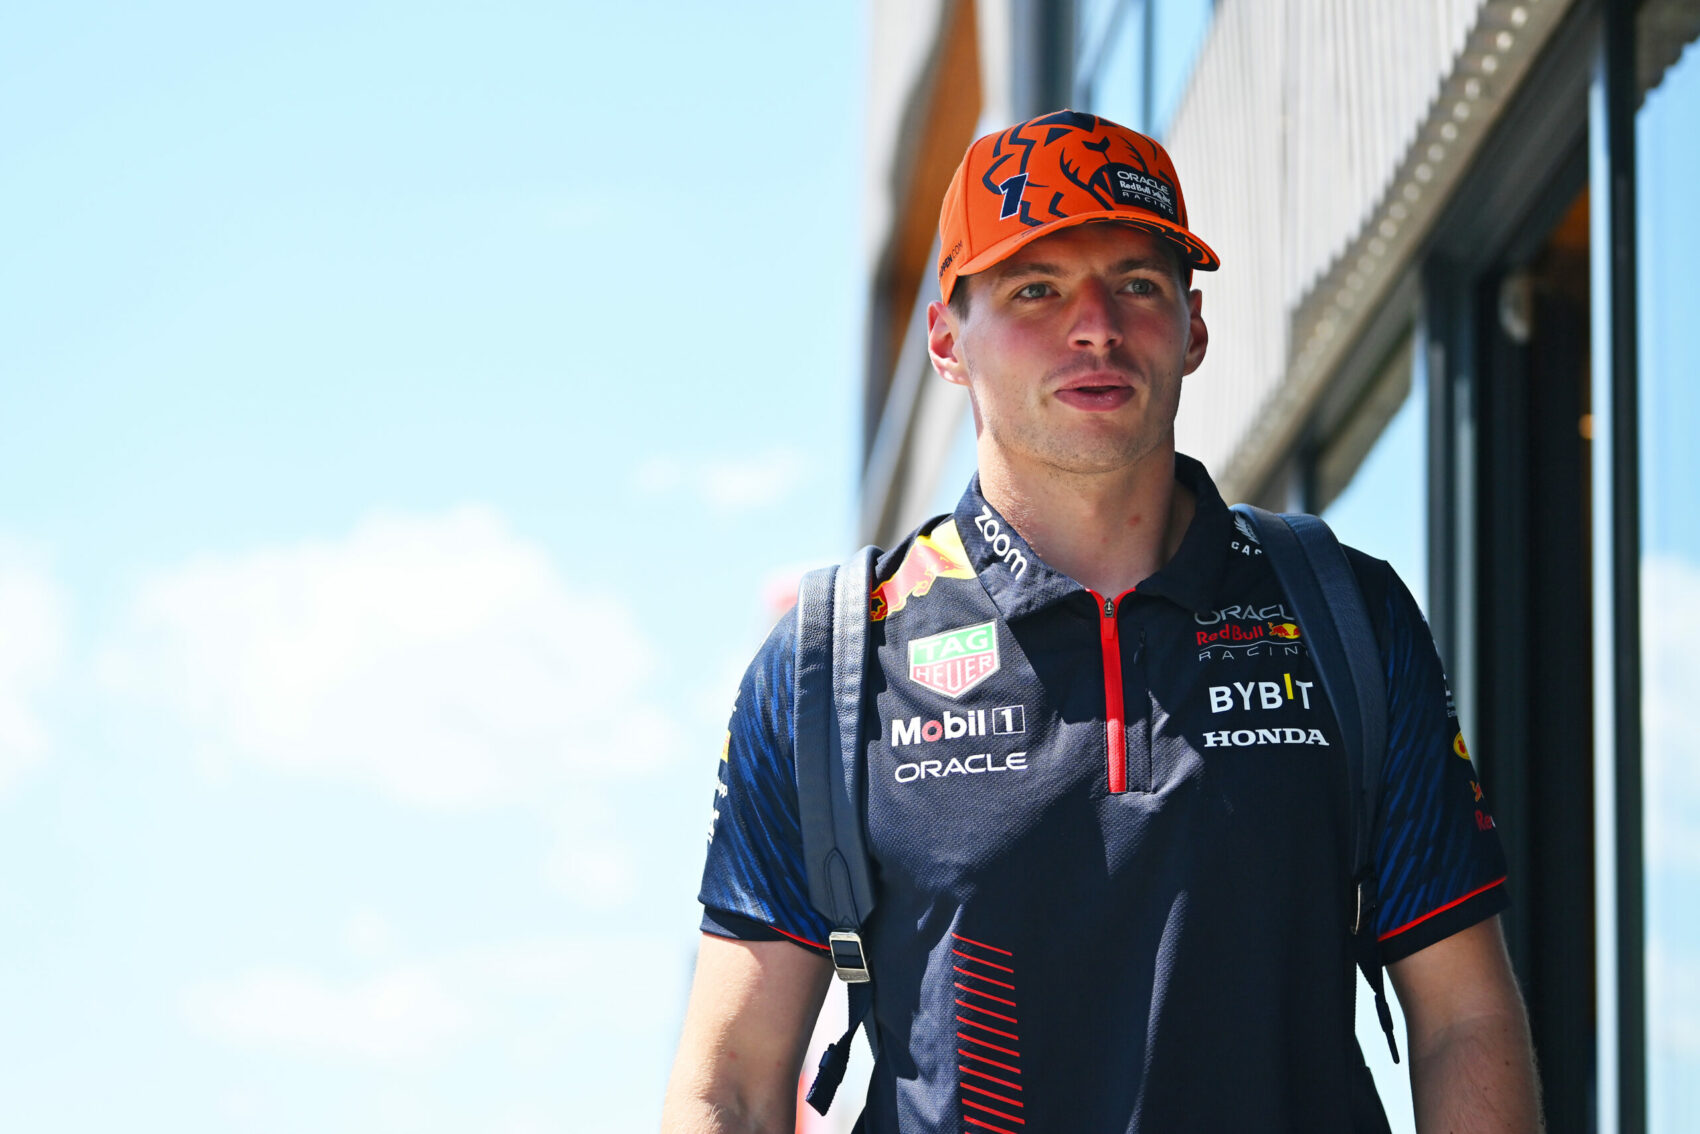 Max Verstappen, Red Bull, Magyar Nagydíj